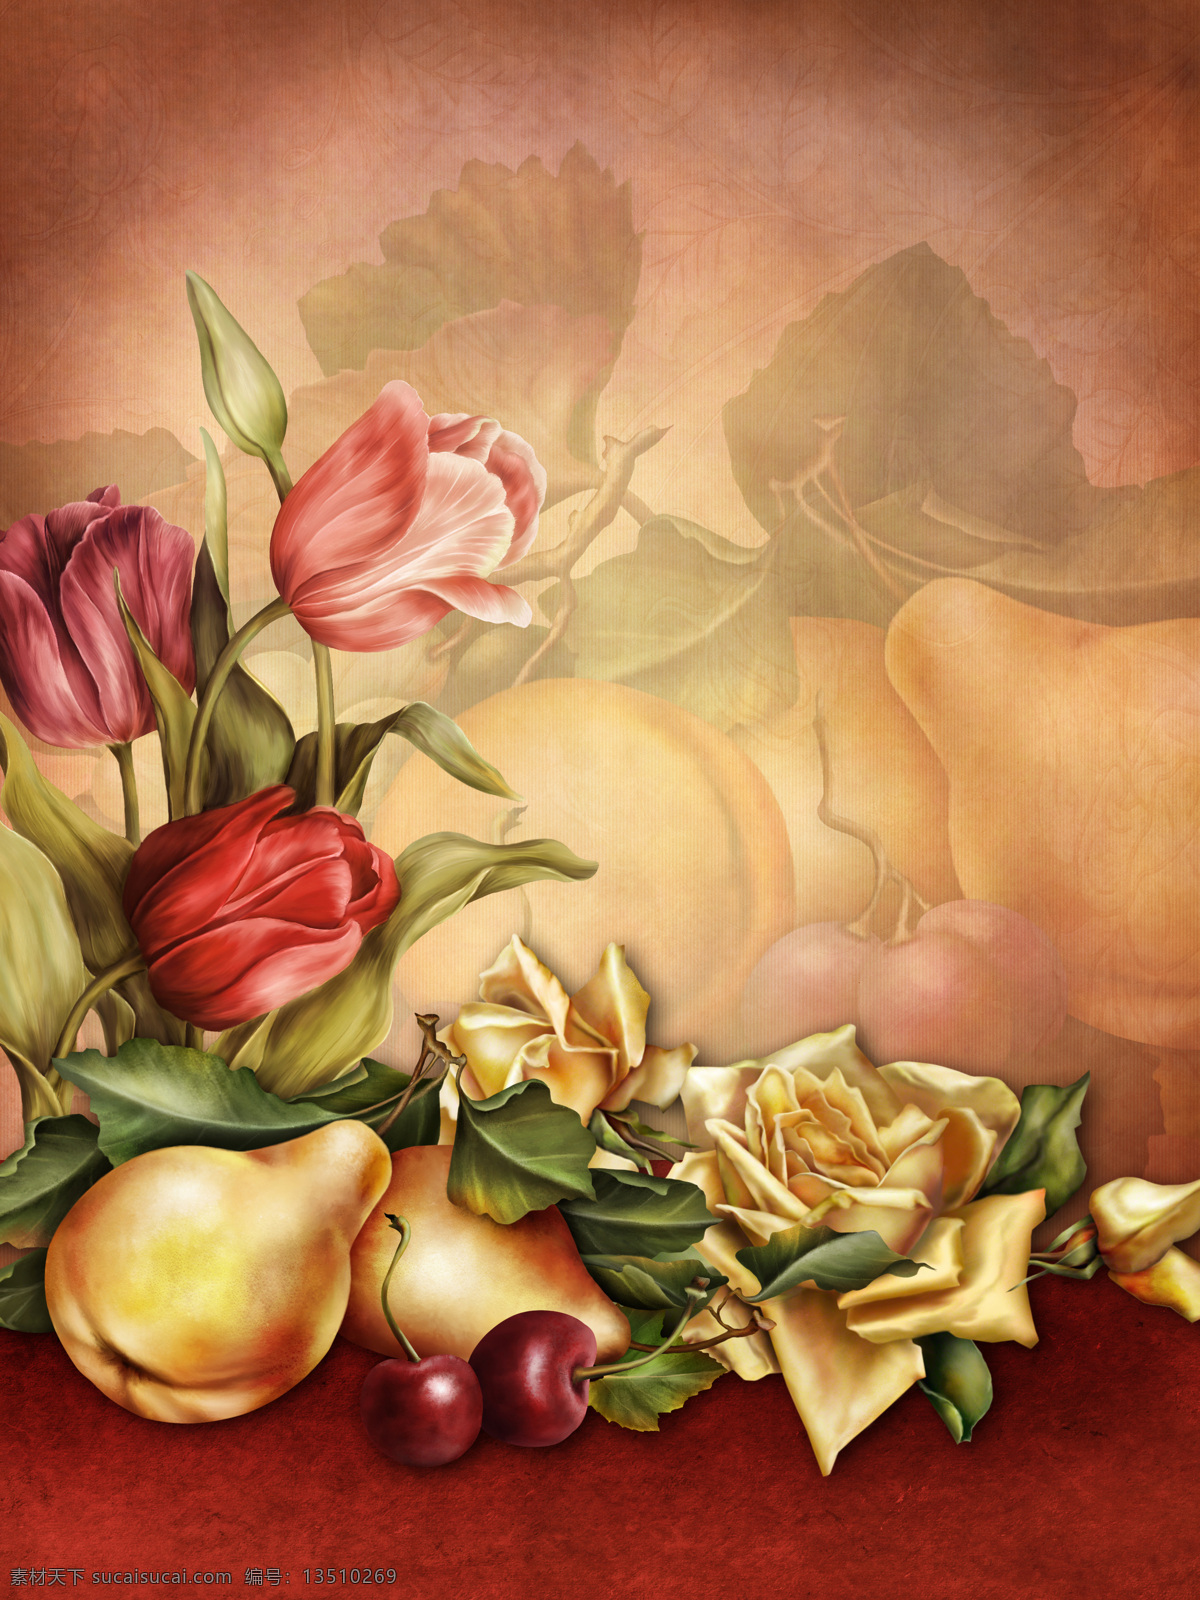 油画 鲜花 水果 静物 油画写生 梨 樱桃 郁金香 玫瑰花 鲜花背景 花朵 美丽花卉 底纹边框 怀旧鲜花背景